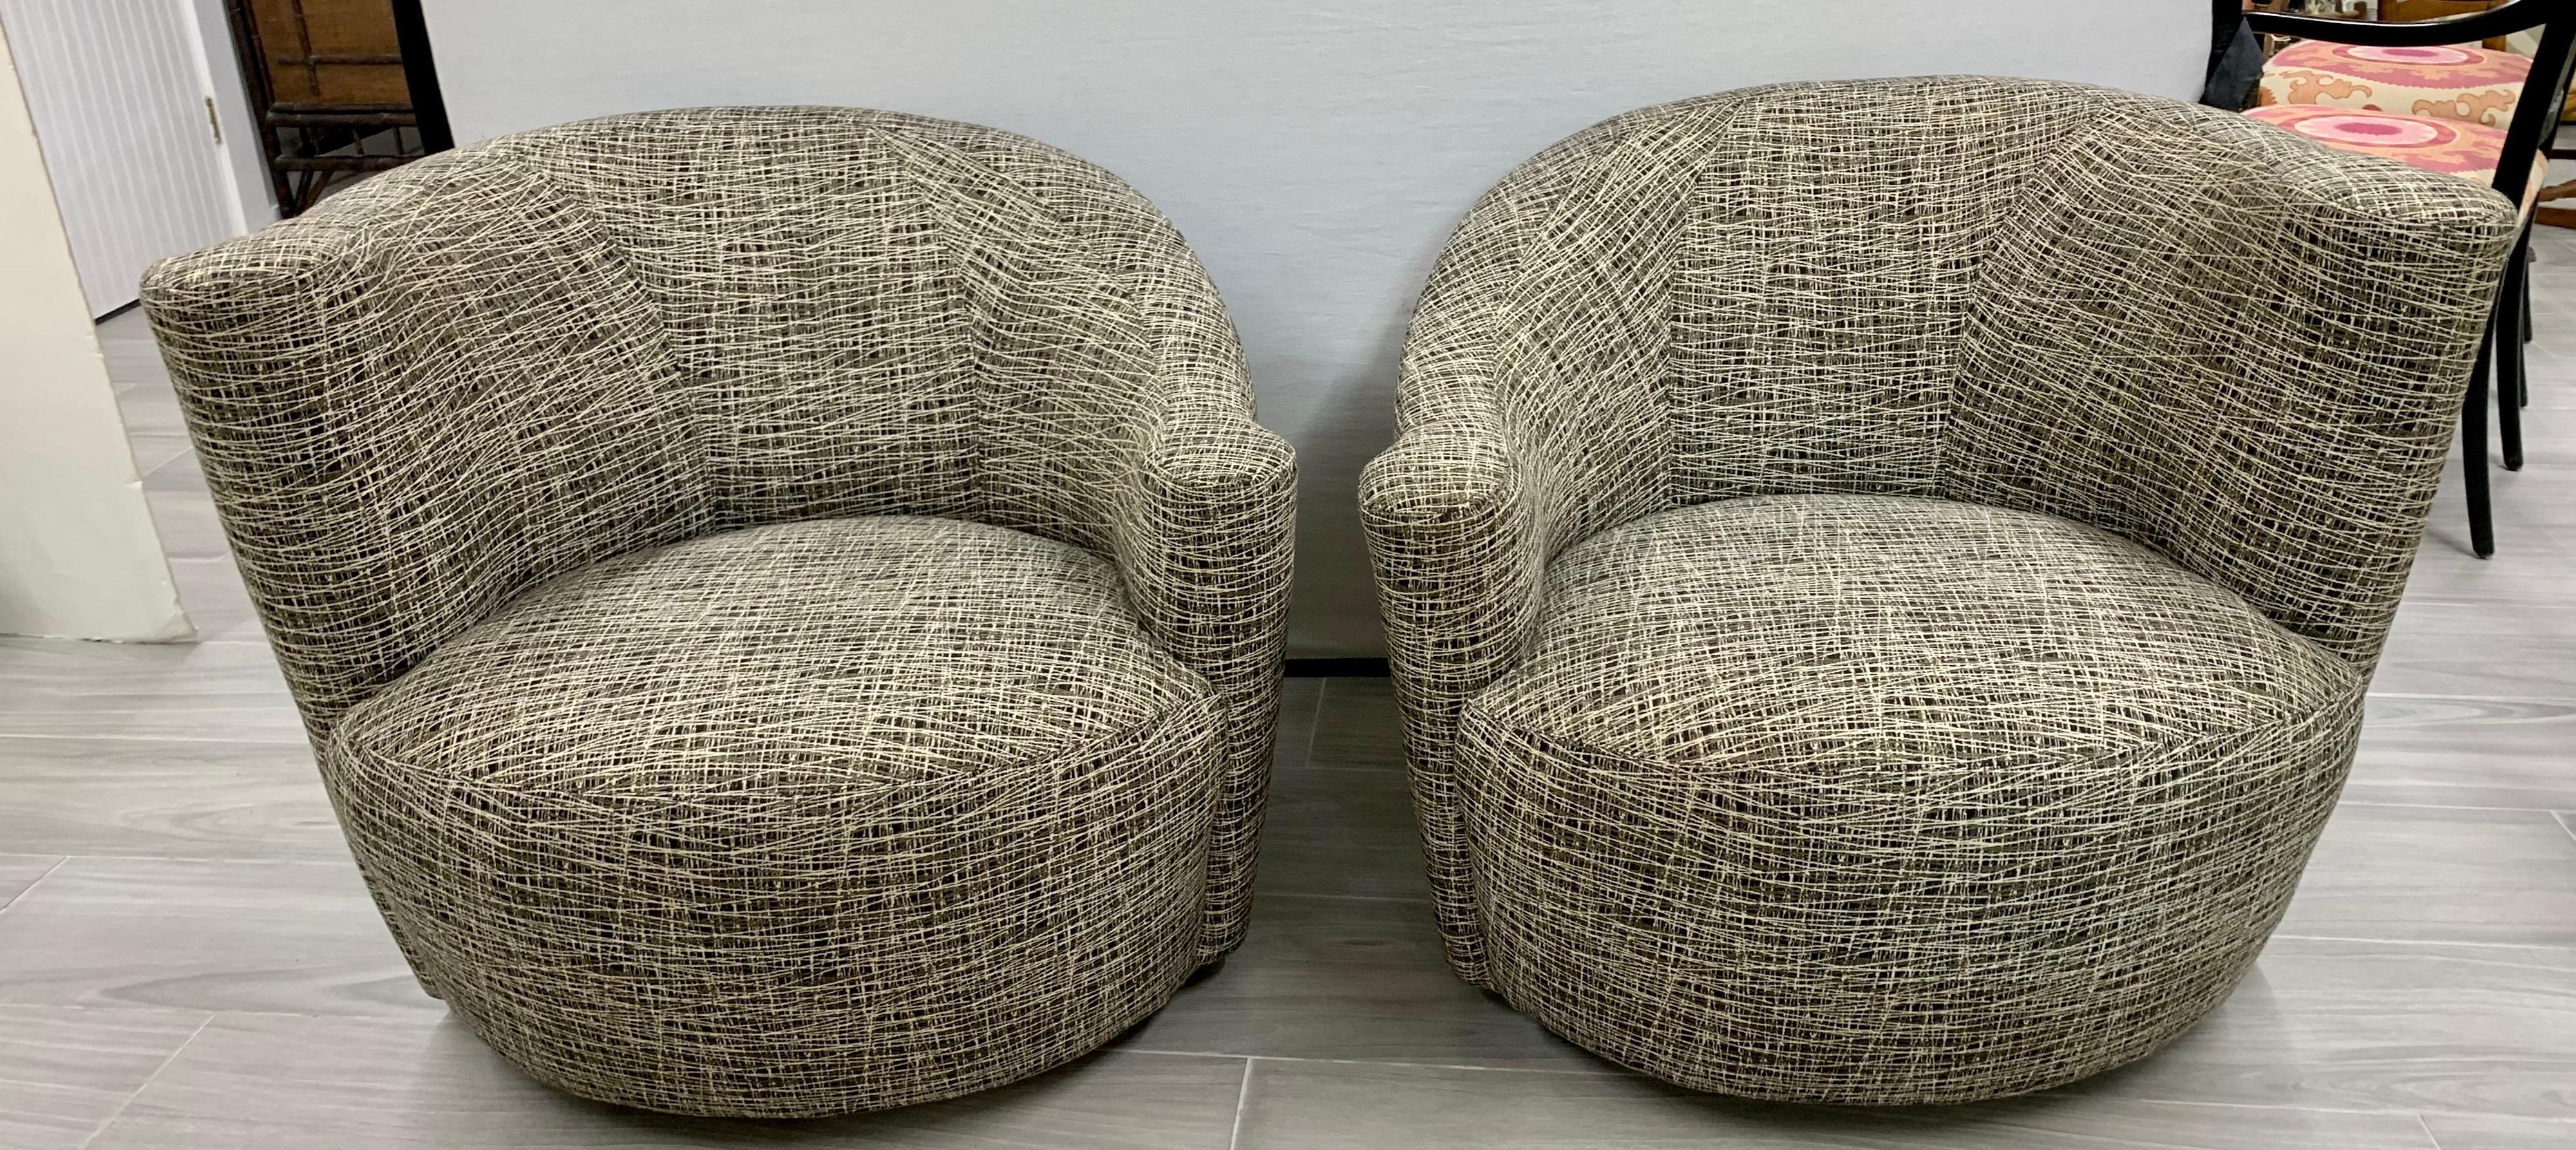 Magnifique paire de chaises Nautilus du début des années 1980 qui ont été retapissées à neuf. Le tissu est un abstrait et rien de moins que spectaculaire. Aujourd'hui, plus que jamais, c'est chez soi qu'on a le cœur.